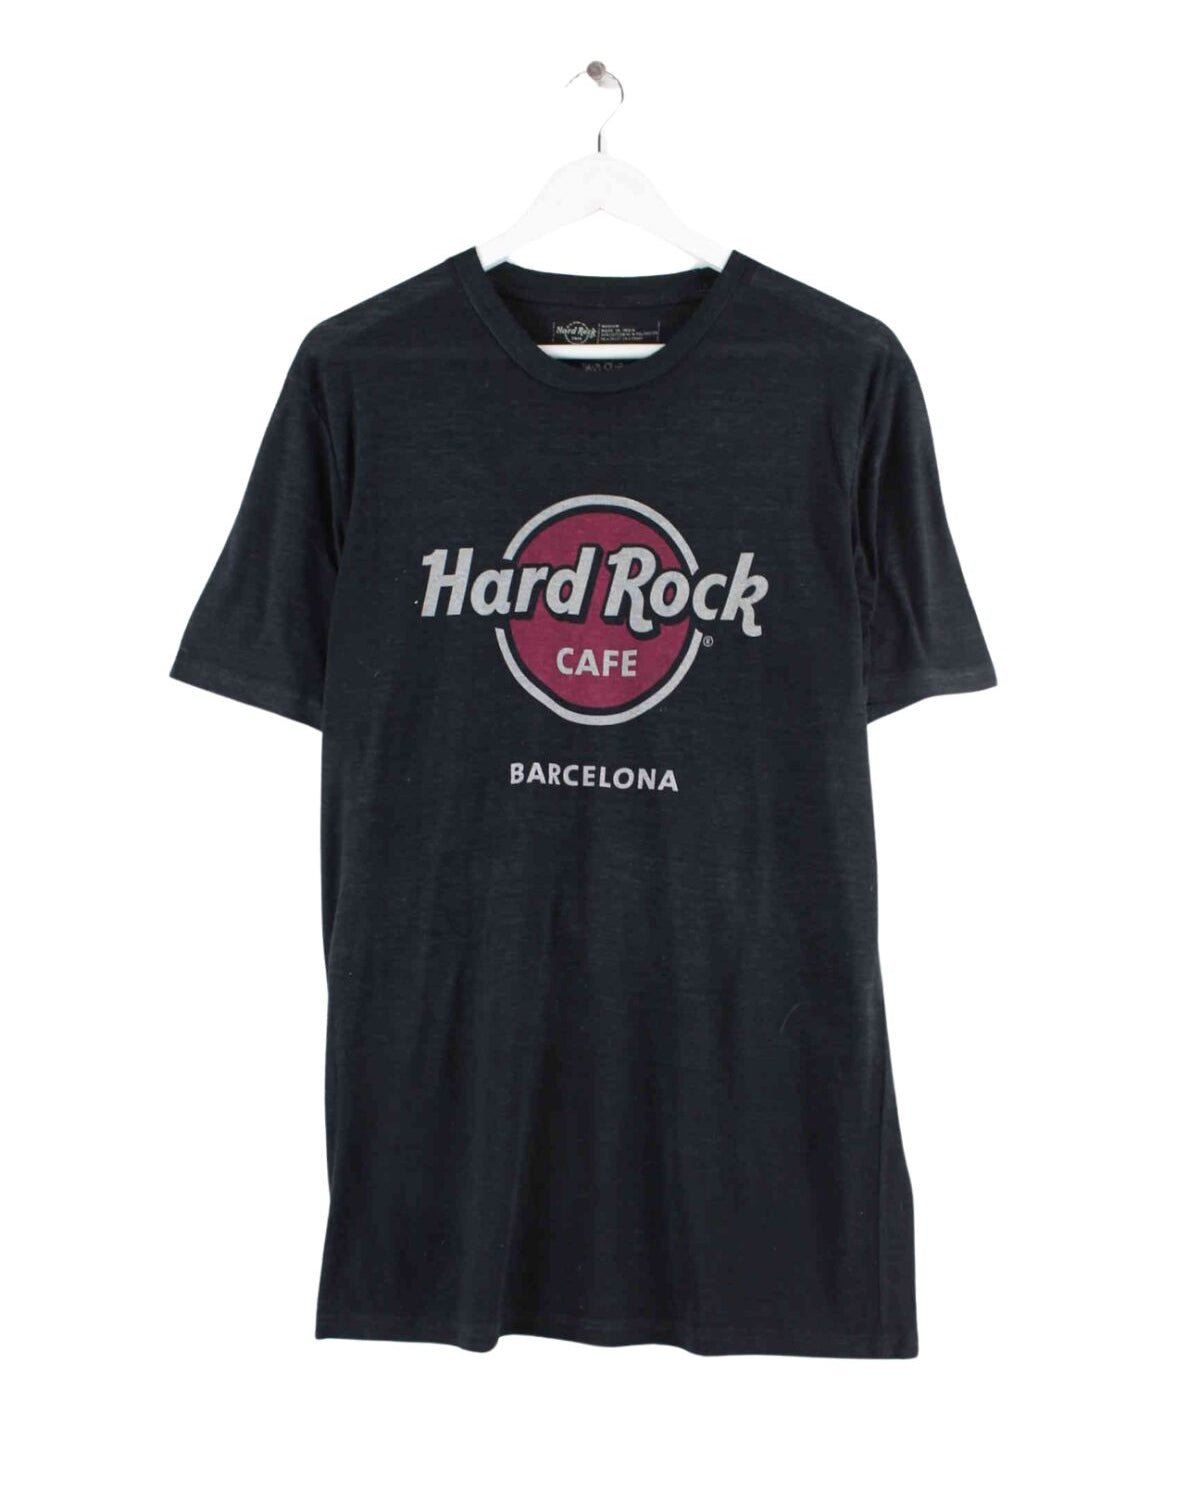 Hard Rock Cafe Barcelona Print T-Shirt Schwarz M (front image)